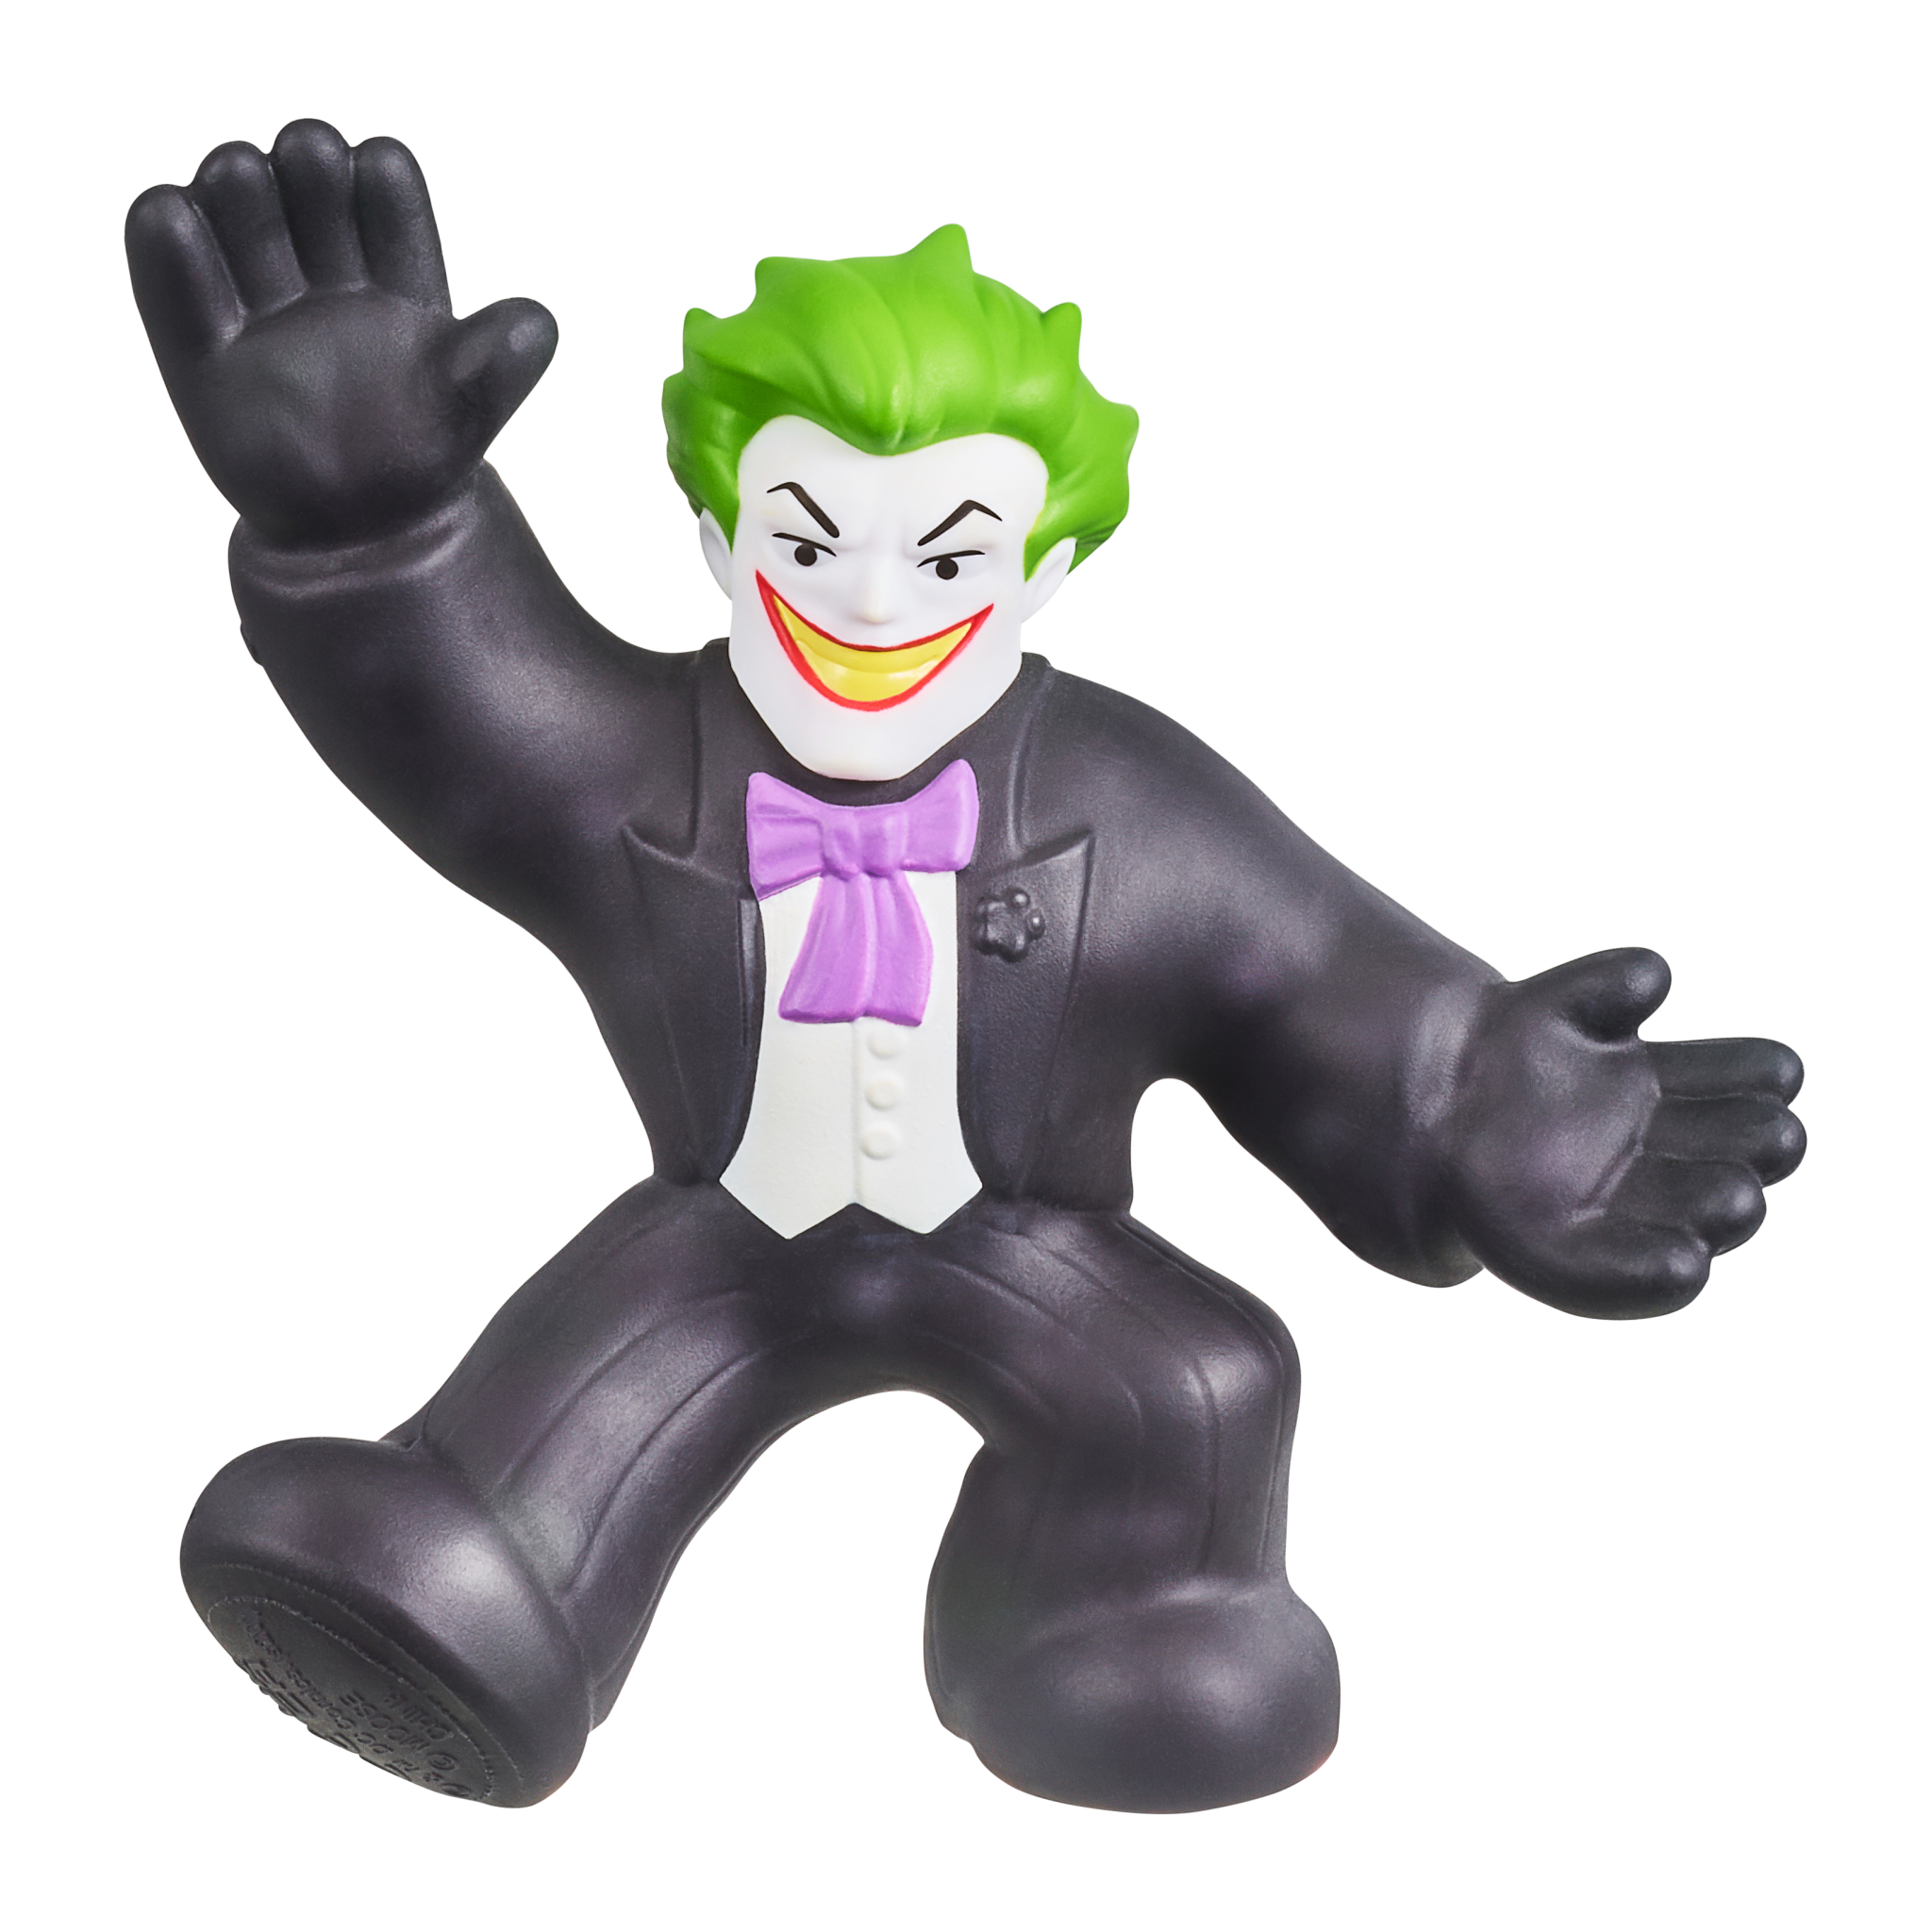 Goo Jit Zu - DC Series 3 - The Tuxedo Joker (41290)